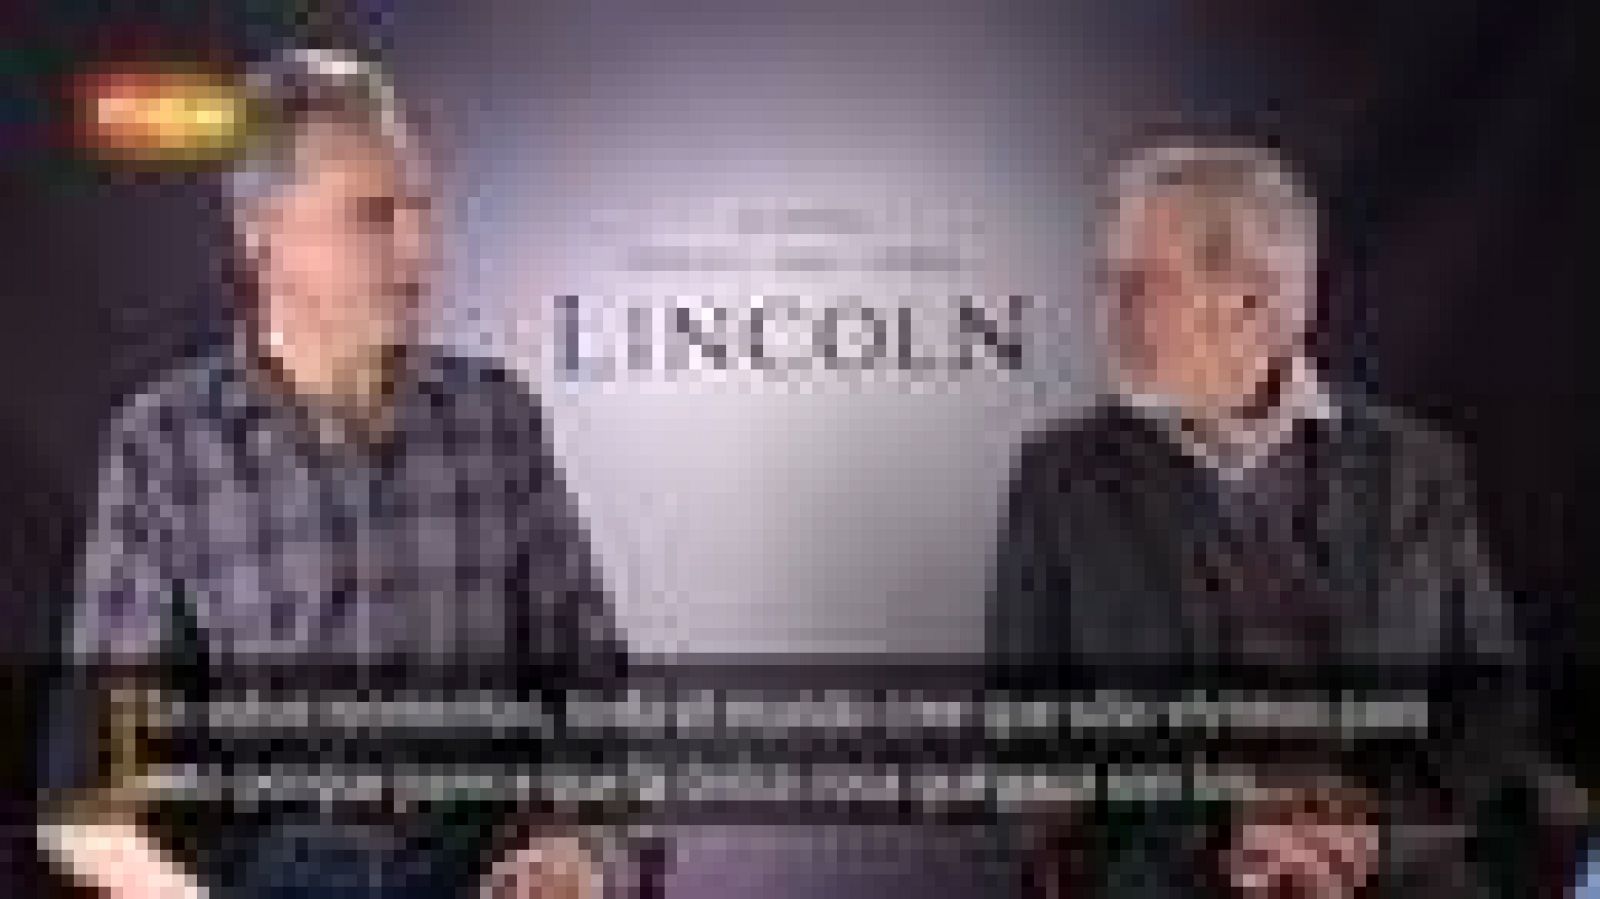 Entrevista con Steven Spielberg y Daniel Day-Lewis, director y protagonista de 'Lincoln'.